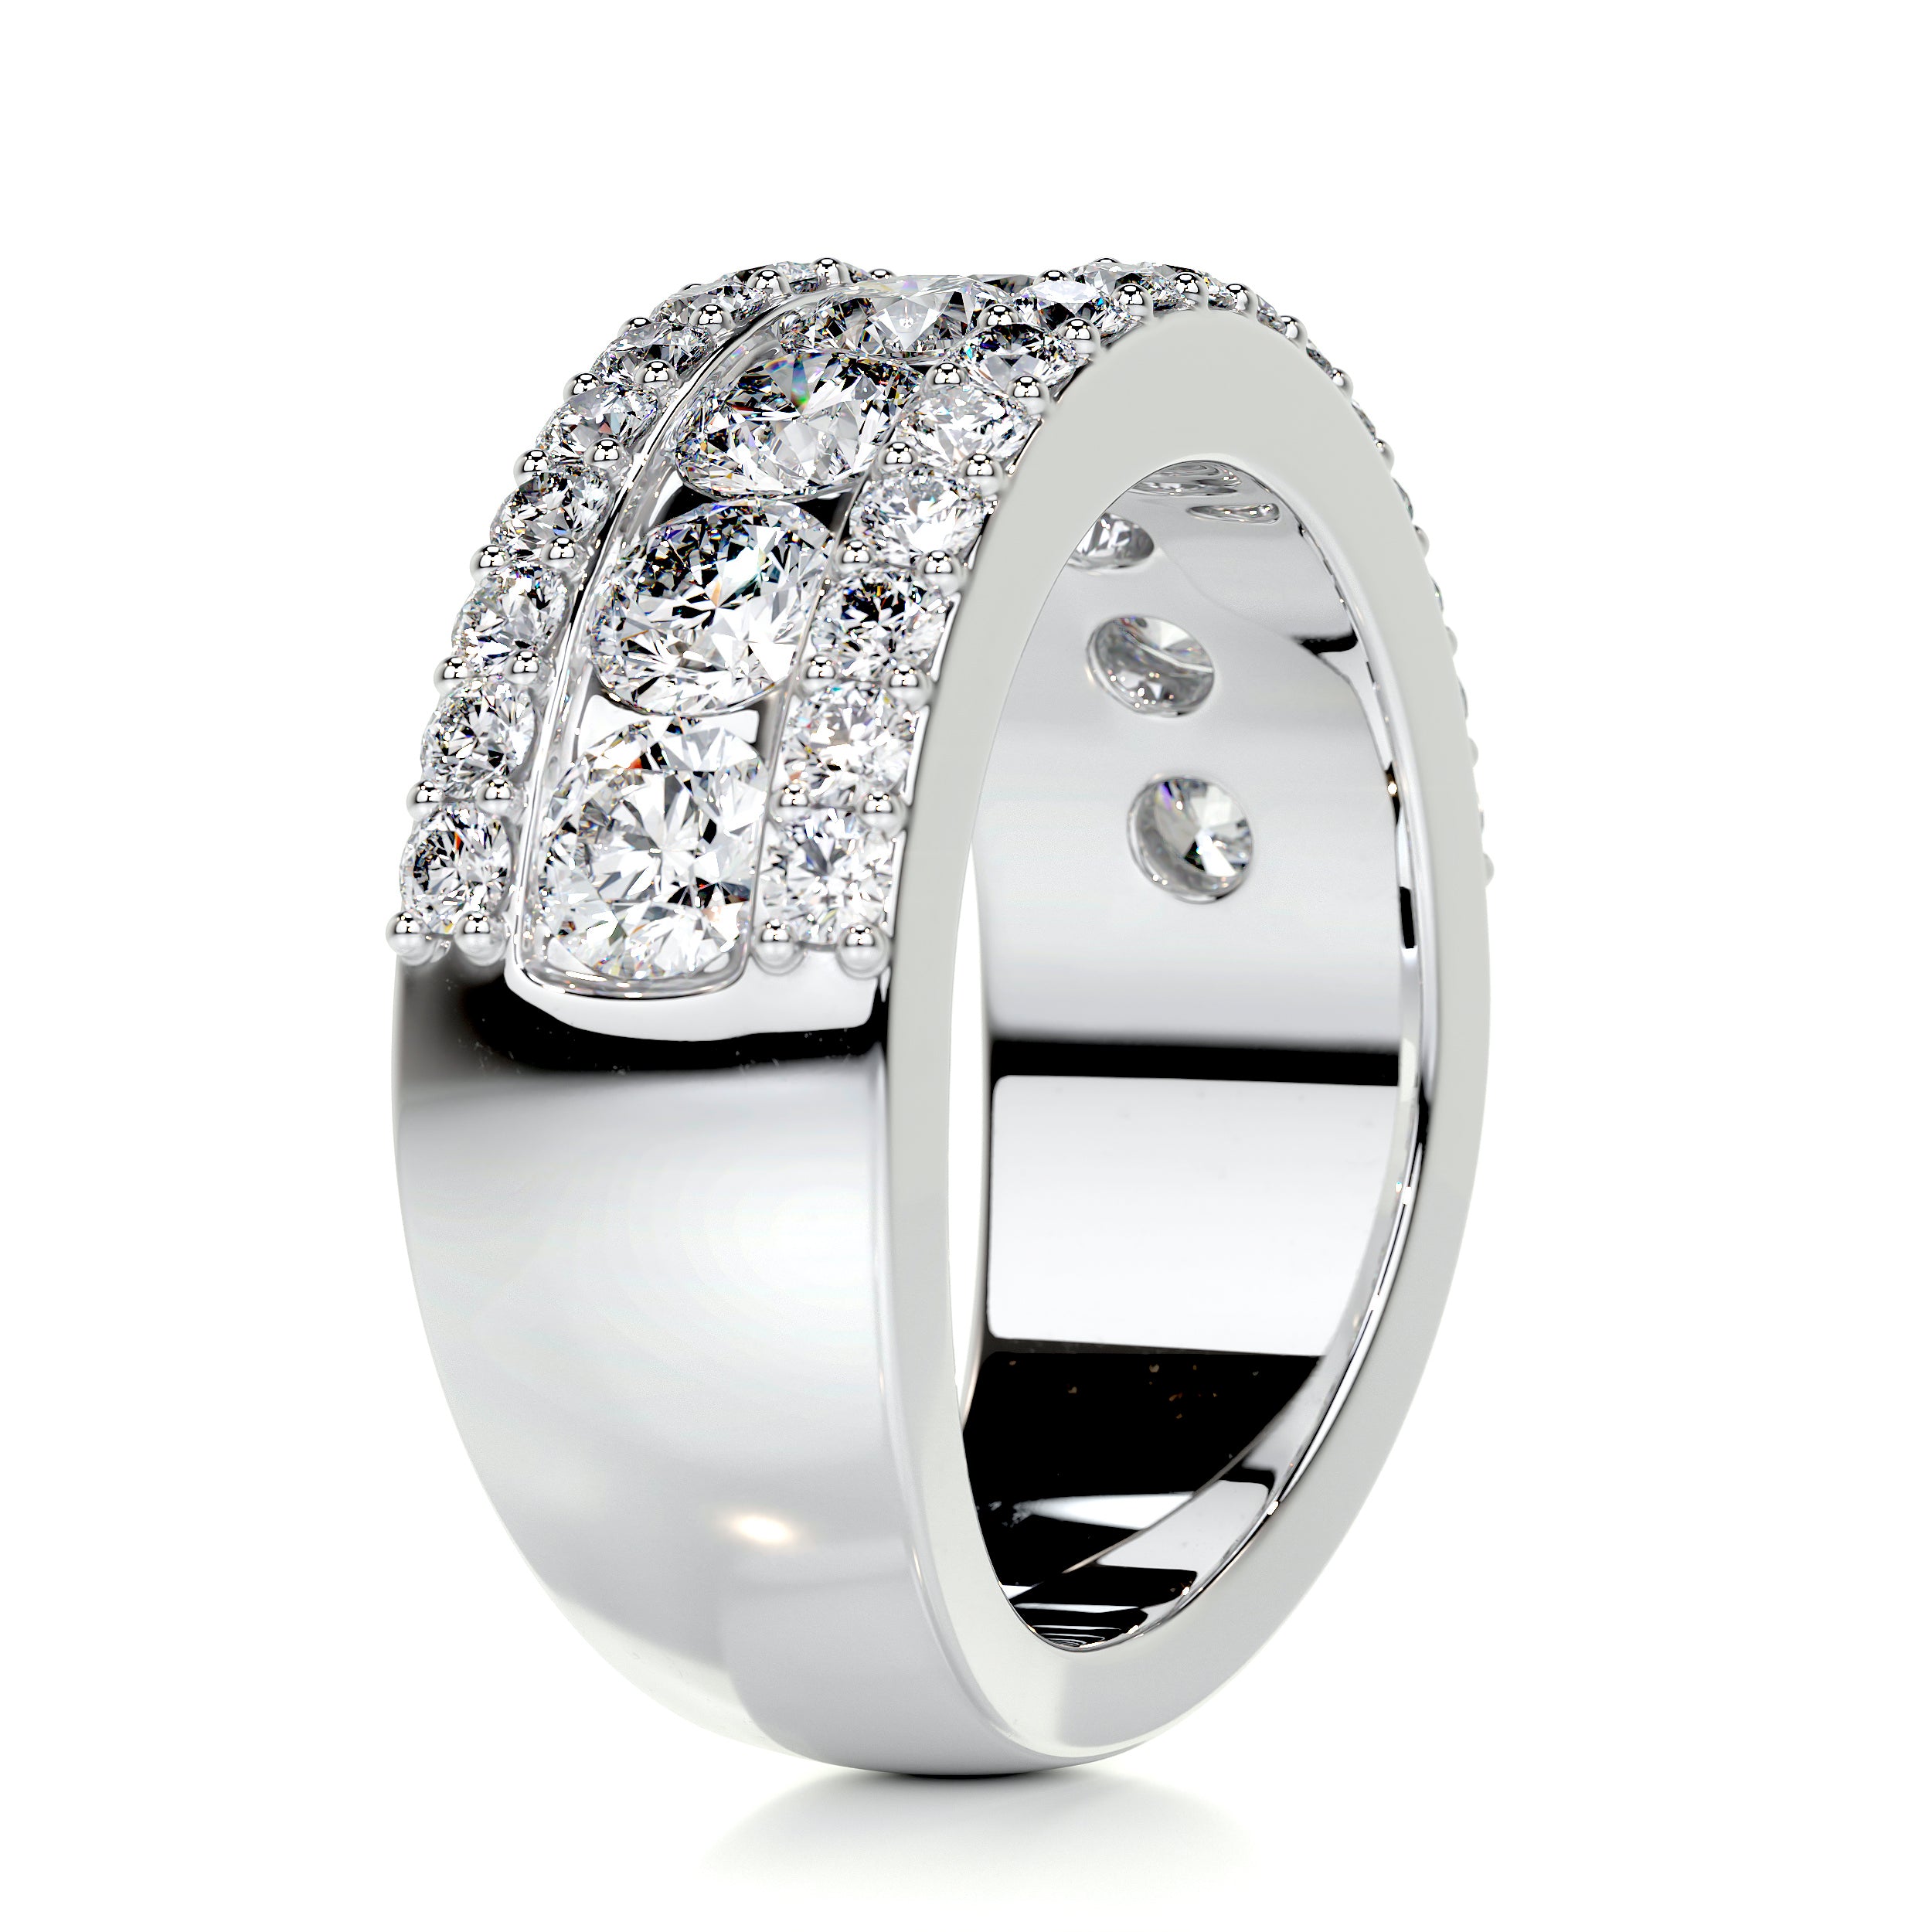 Nia Diamond Wedding Ring   (2 Carat) -18K White Gold